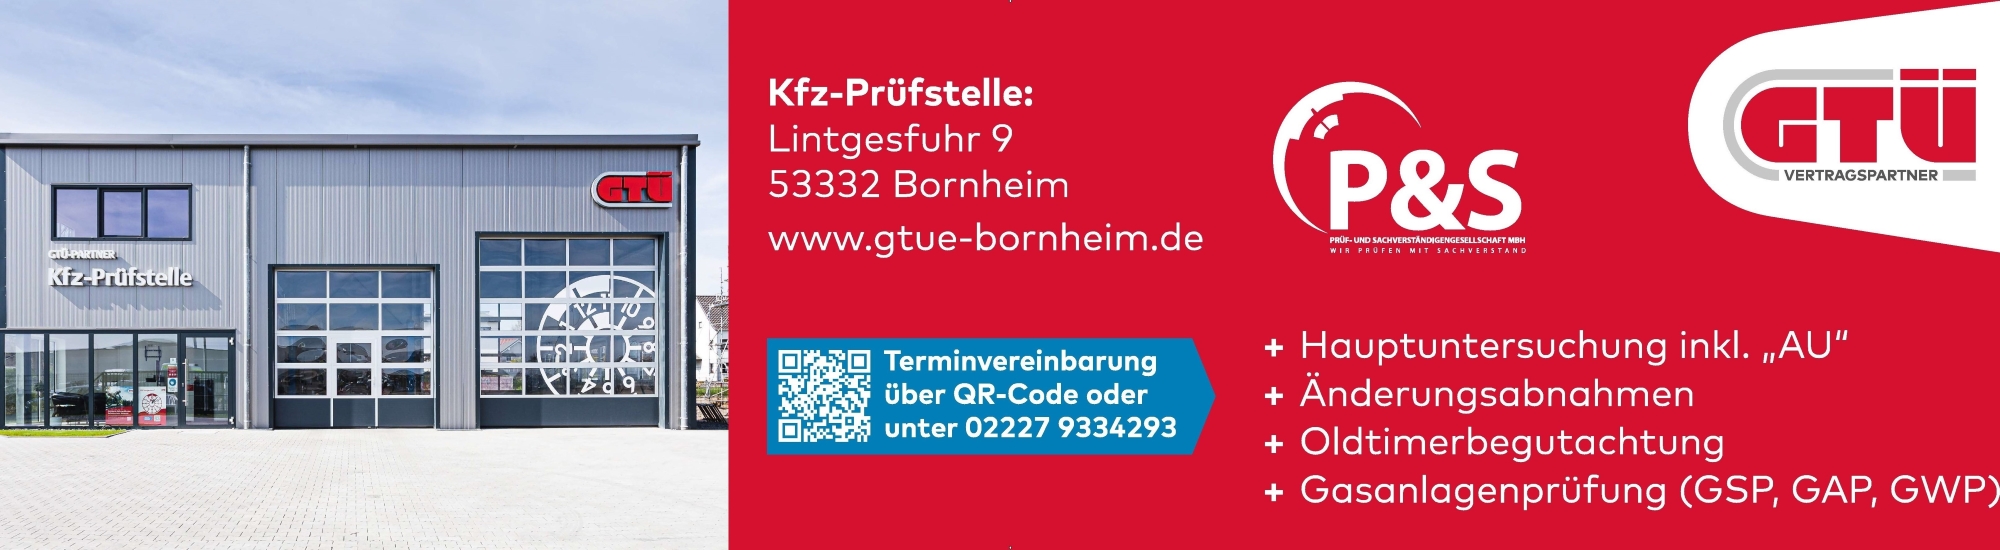 GTÜ Kfz.-Prüfstelle Bornheim P&S Prüf- und Sachverständigengesellschaft mbH